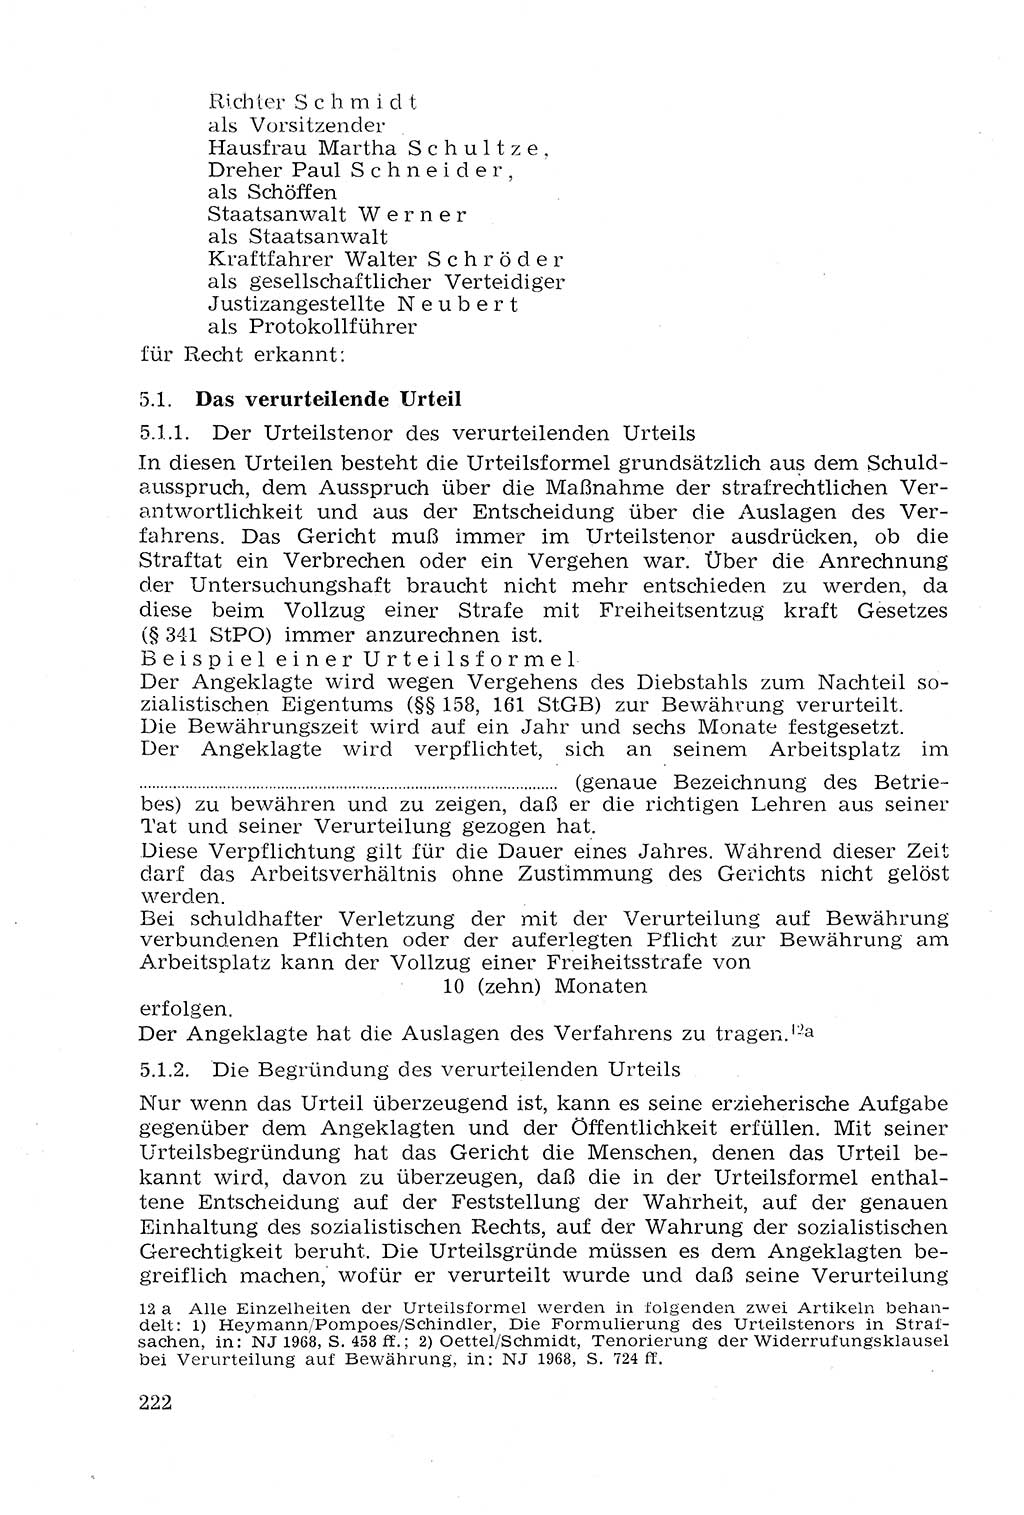 Strafprozeßrecht der DDR (Deutsche Demokratische Republik), Lehrmaterial 1969, Seite 222 (Strafprozeßr. DDR Lehrmat. 1969, S. 222)